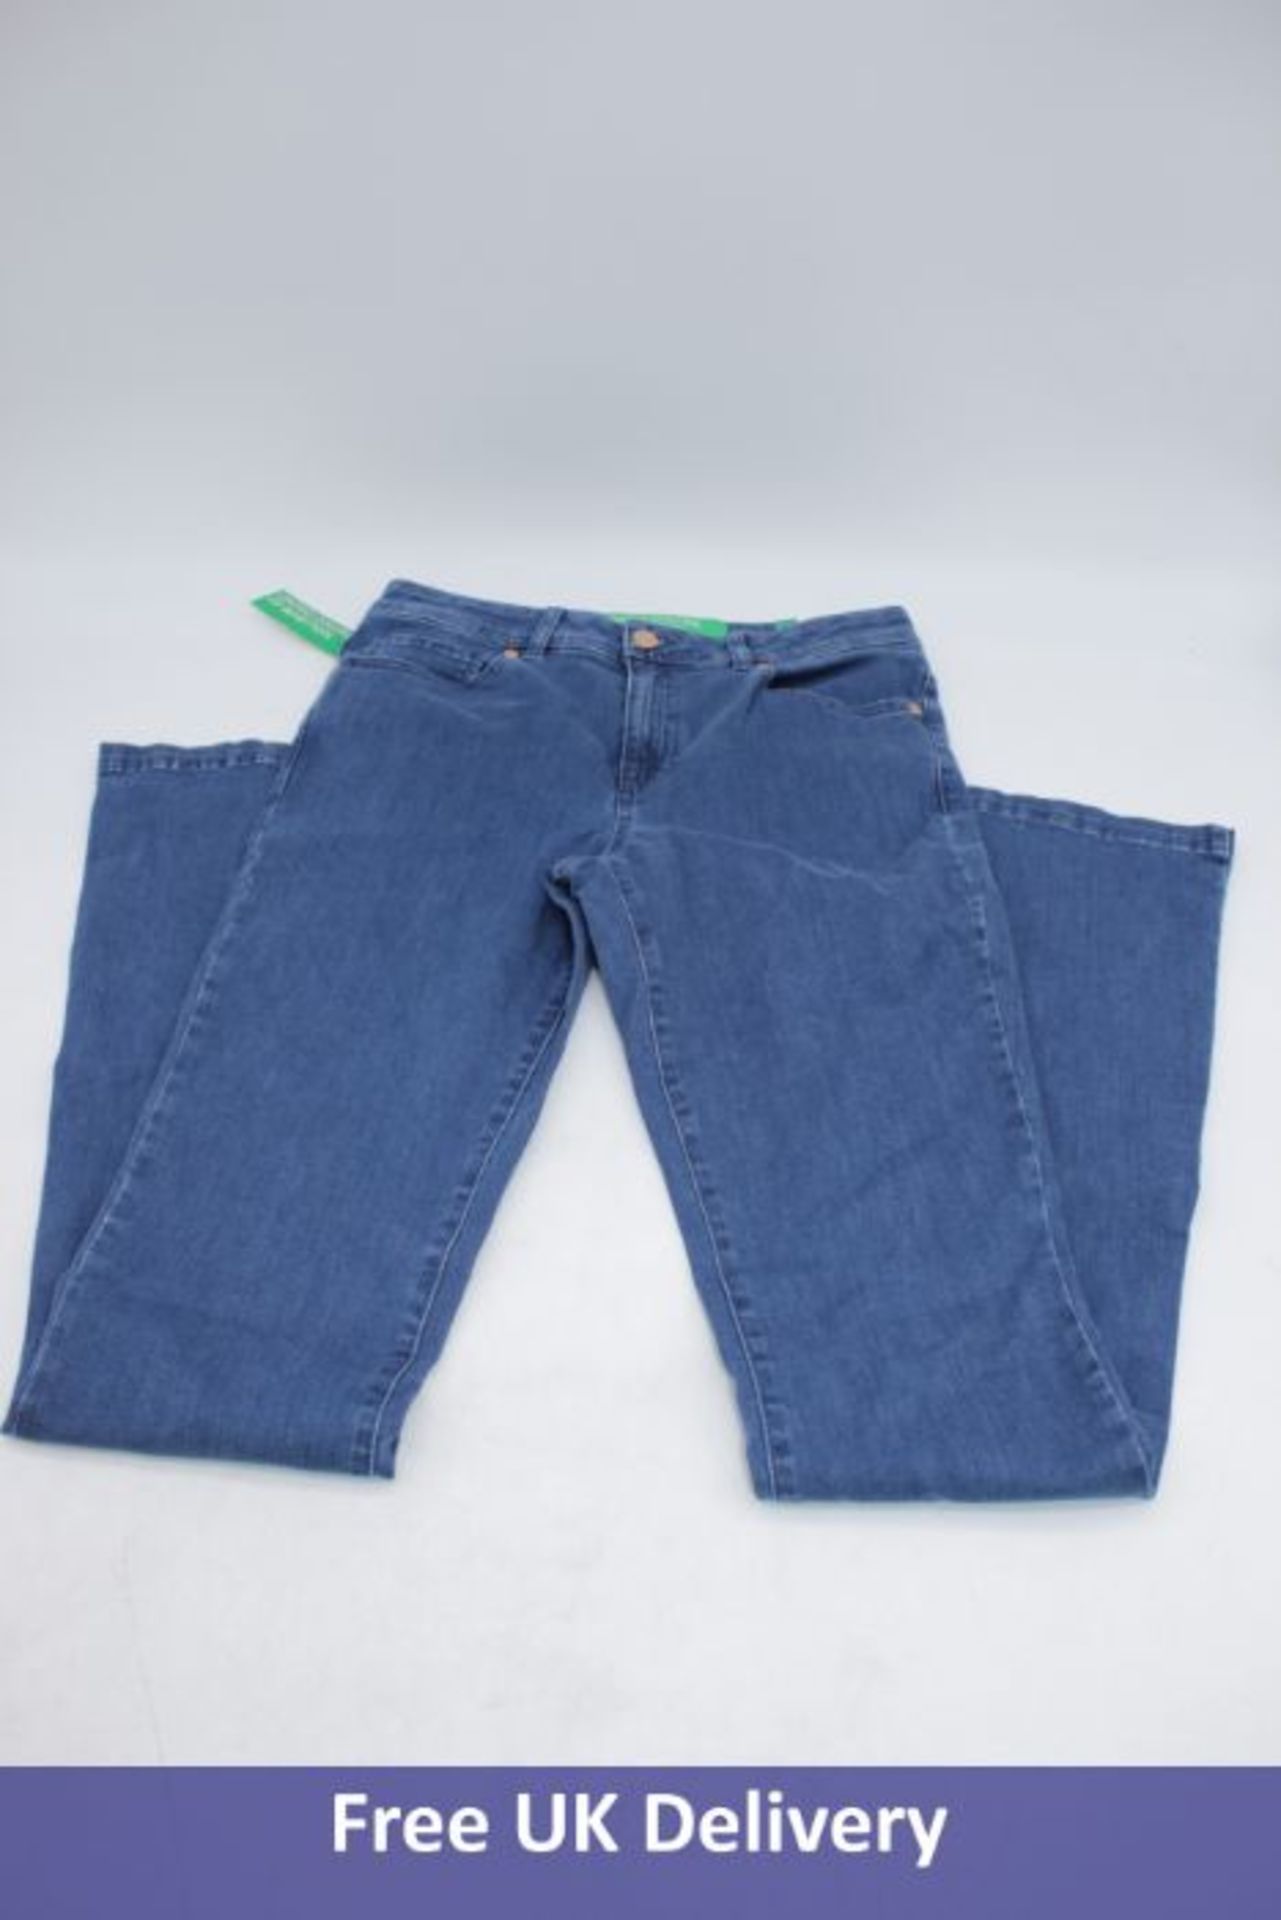 Two United Colour OF Benetton Slim Fit Women's Jeans, Blue, 1x EU 29, 1x EU 30